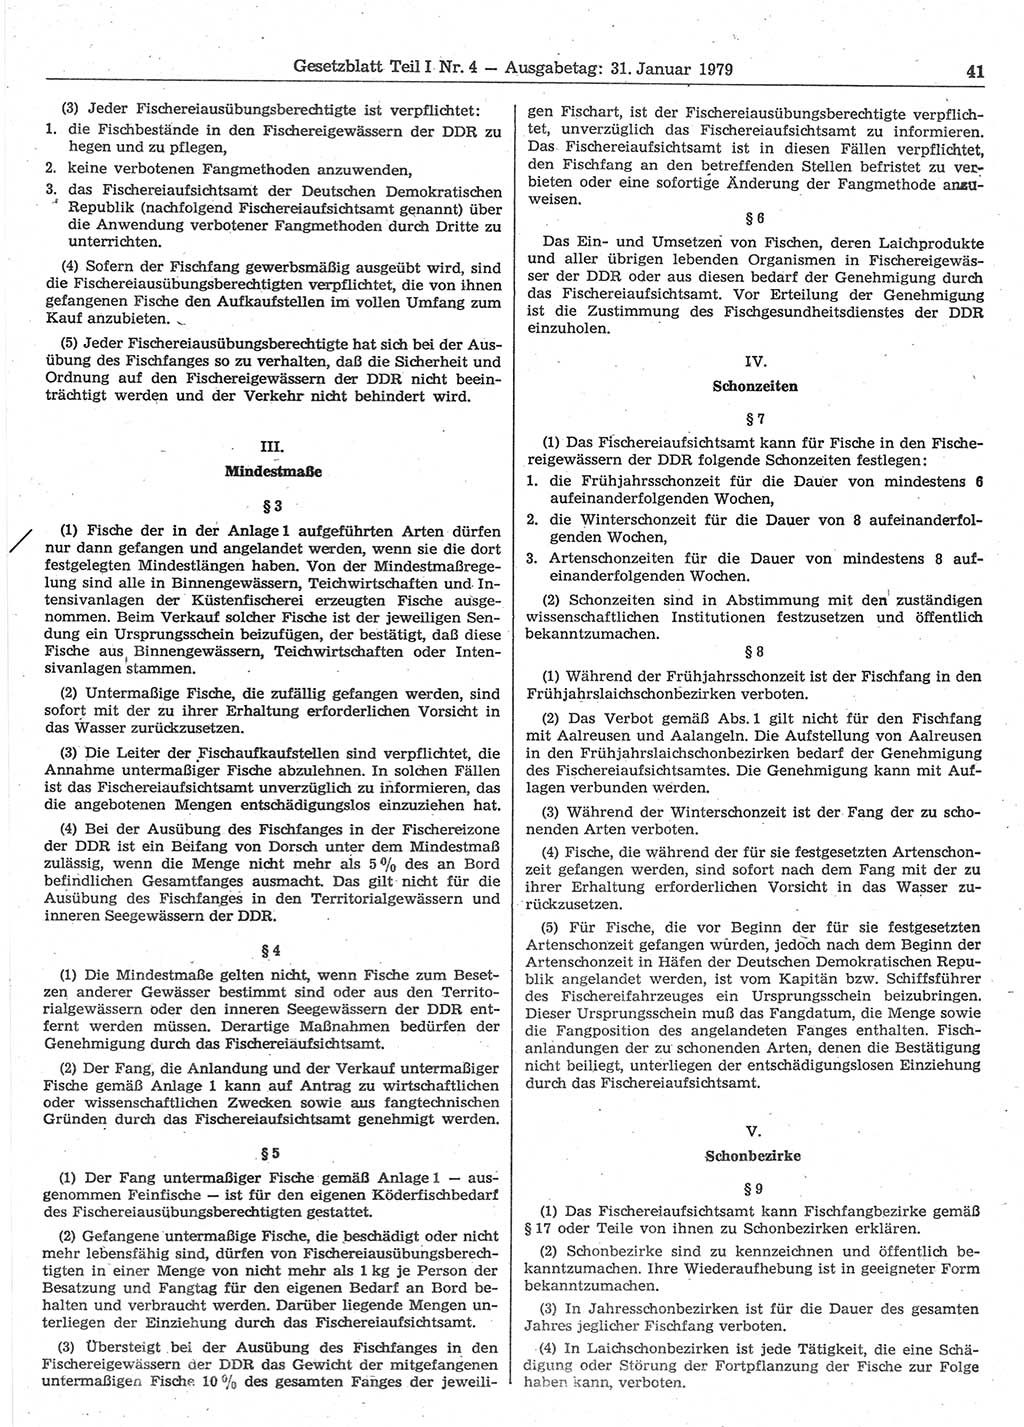 Gesetzblatt (GBl.) der Deutschen Demokratischen Republik (DDR) Teil Ⅰ 1979, Seite 41 (GBl. DDR Ⅰ 1979, S. 41)